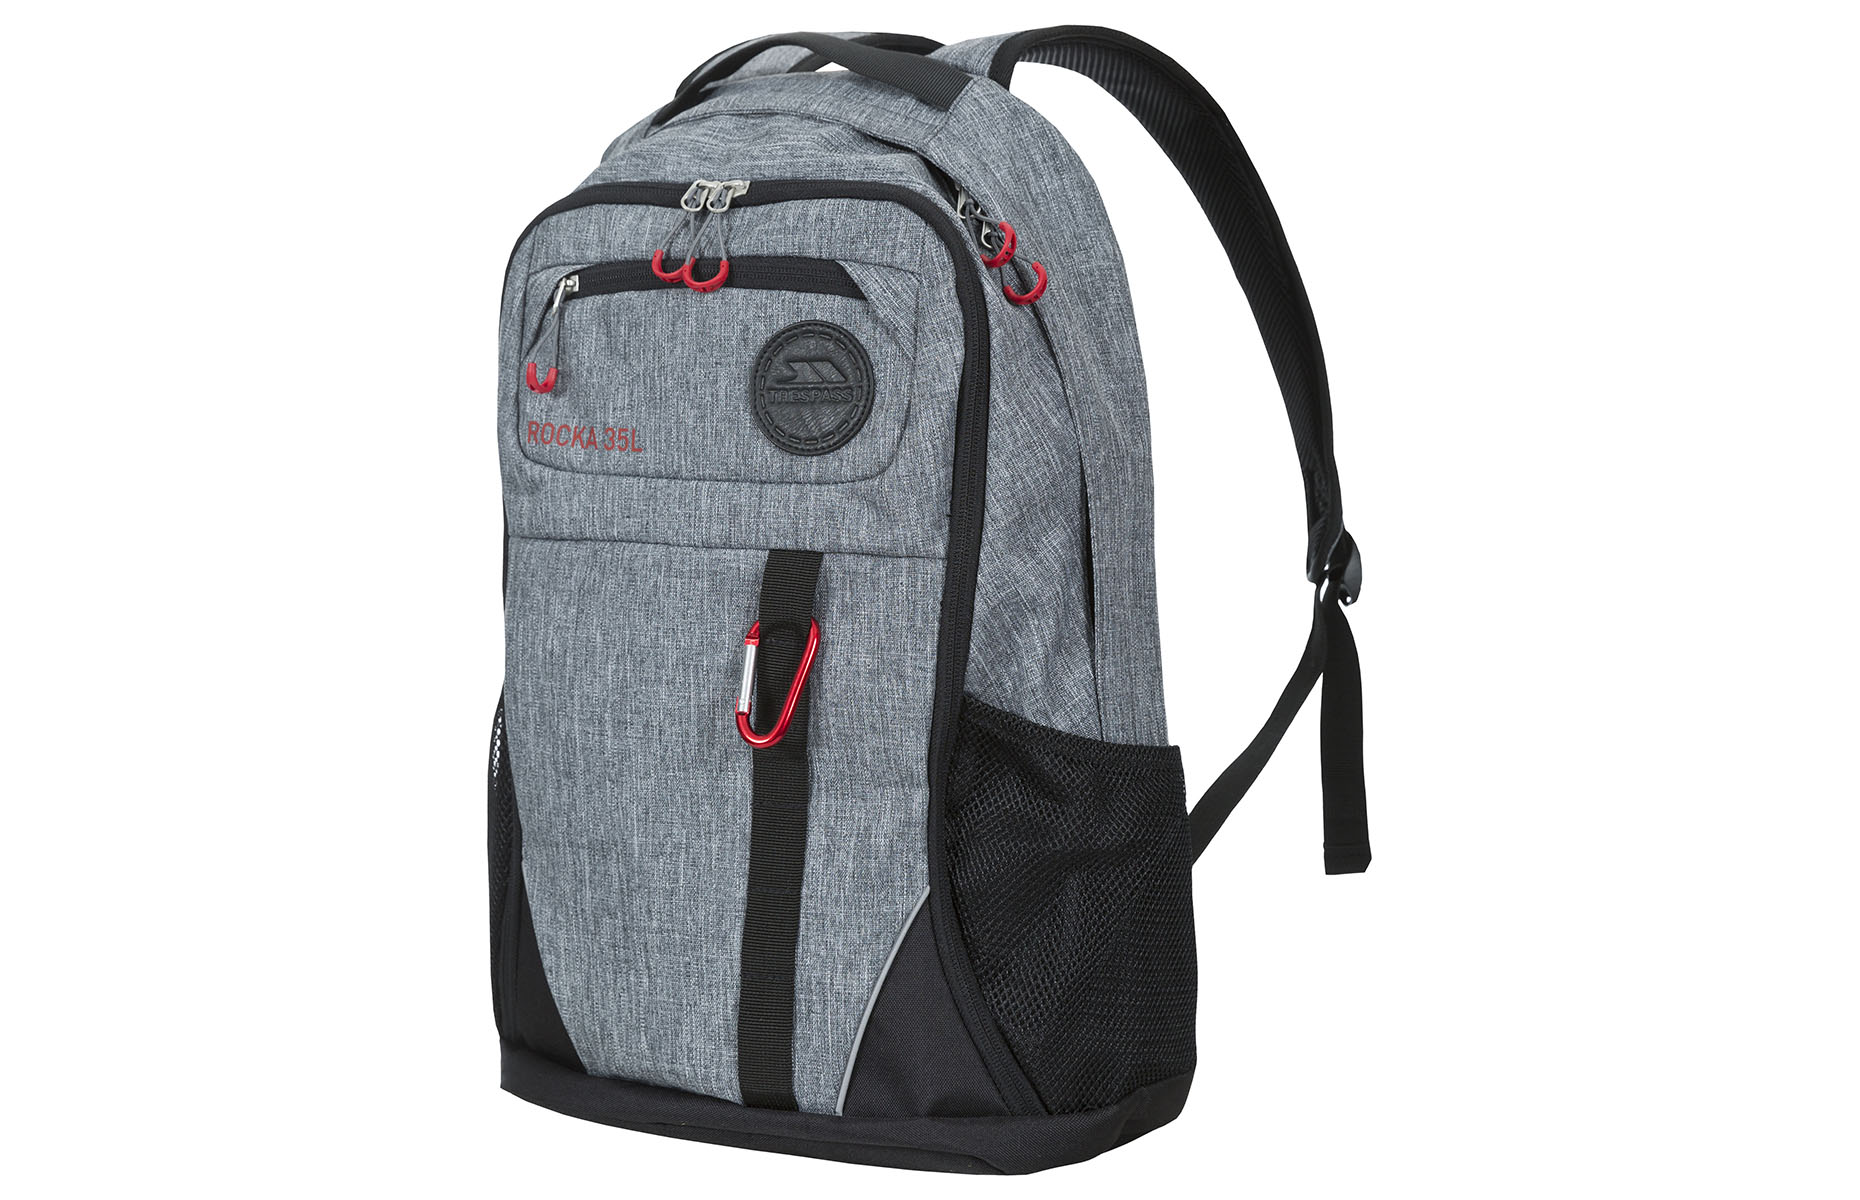 Tresspass backpack